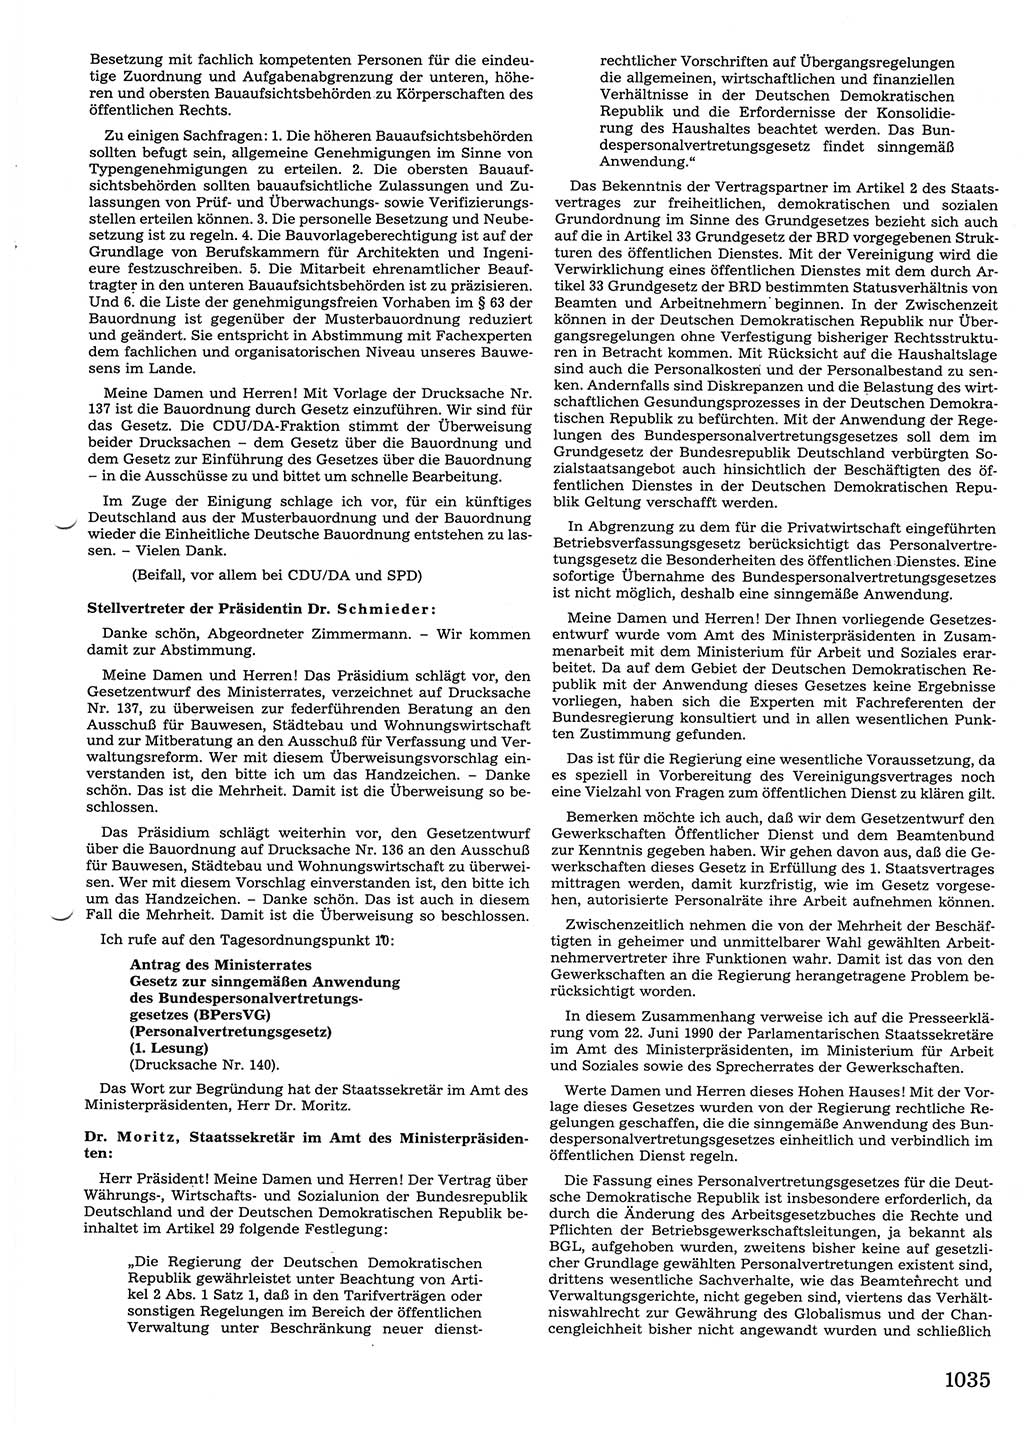 Tagungen der Volkskammer (VK) der Deutschen Demokratischen Republik (DDR), 10. Wahlperiode 1990, Seite 1035 (VK. DDR 10. WP. 1990, Prot. Tg. 1-38, 5.4.-2.10.1990, S. 1035)